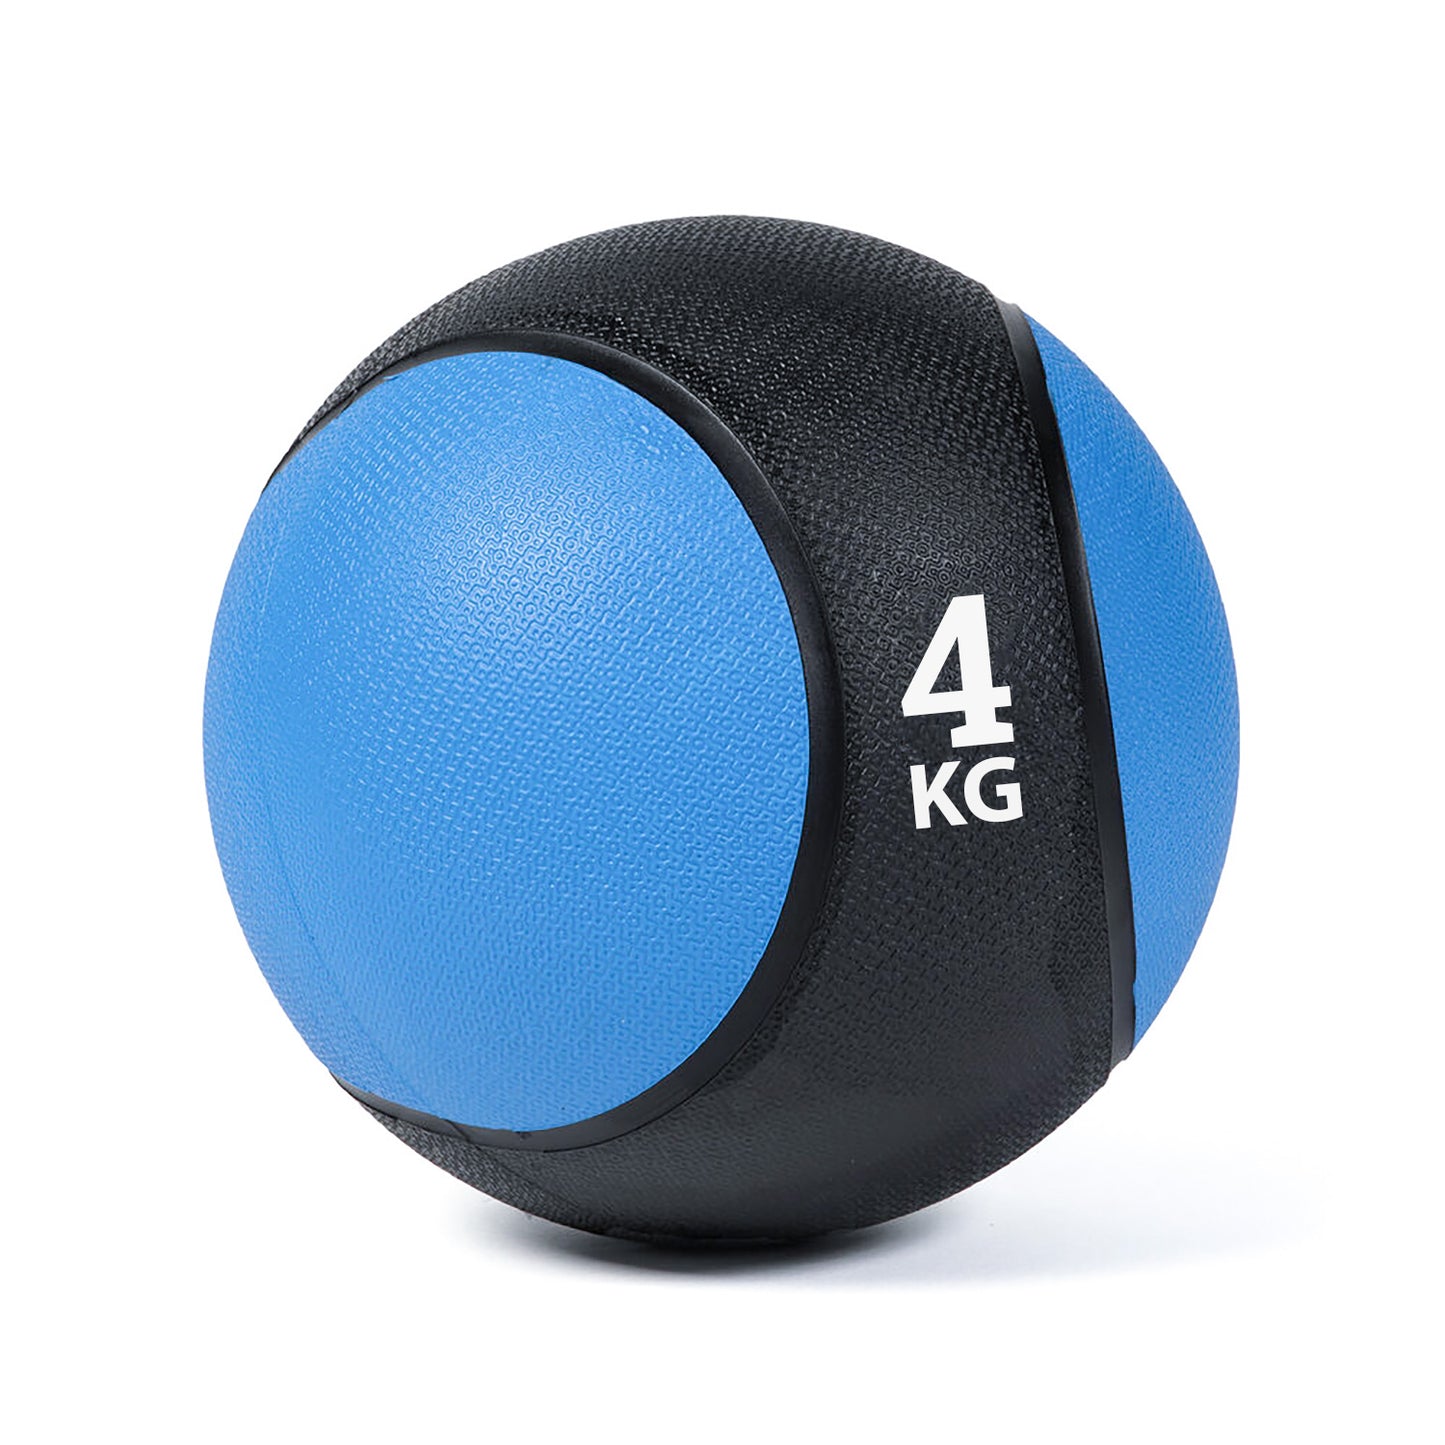 كرة طبية من المطاط لاعادة التأهيل و اللياقة البدنية - لون اسود و ازرق - وزن 4 كيلو جرام